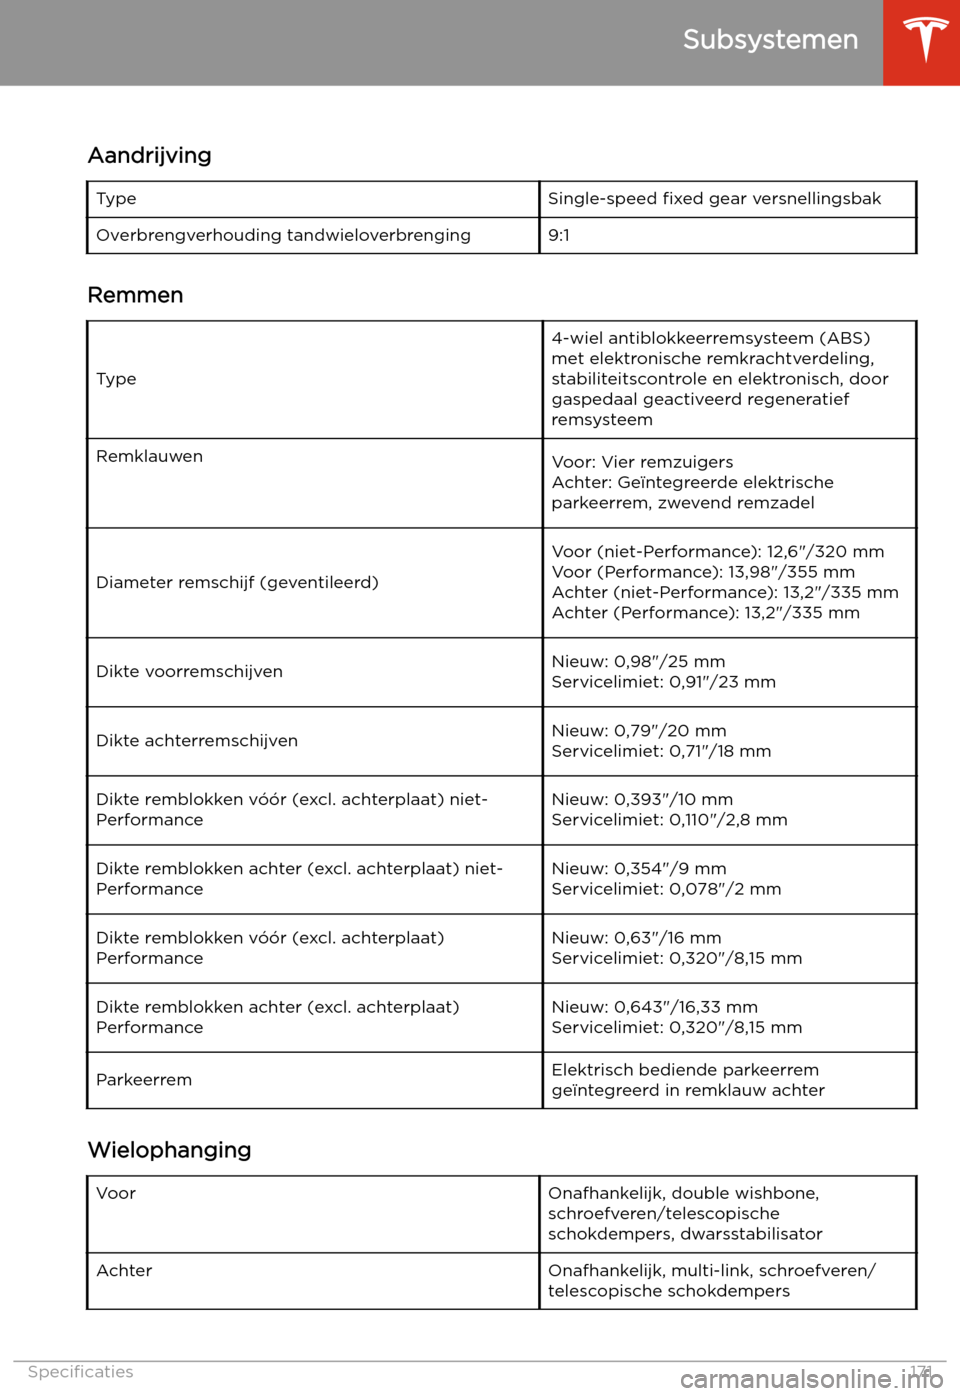 TESLA MODEL 3 2019  Handleiding (in Dutch) Subsystemen
Aandrijving
TypeSingle-speed  fixed gear versnellingsbakOverbrengverhouding tandwieloverbrenging9:1
Remmen
Type
4-wiel antiblokkeerremsysteem (ABS)
met elektronische remkrachtverdeling,sta